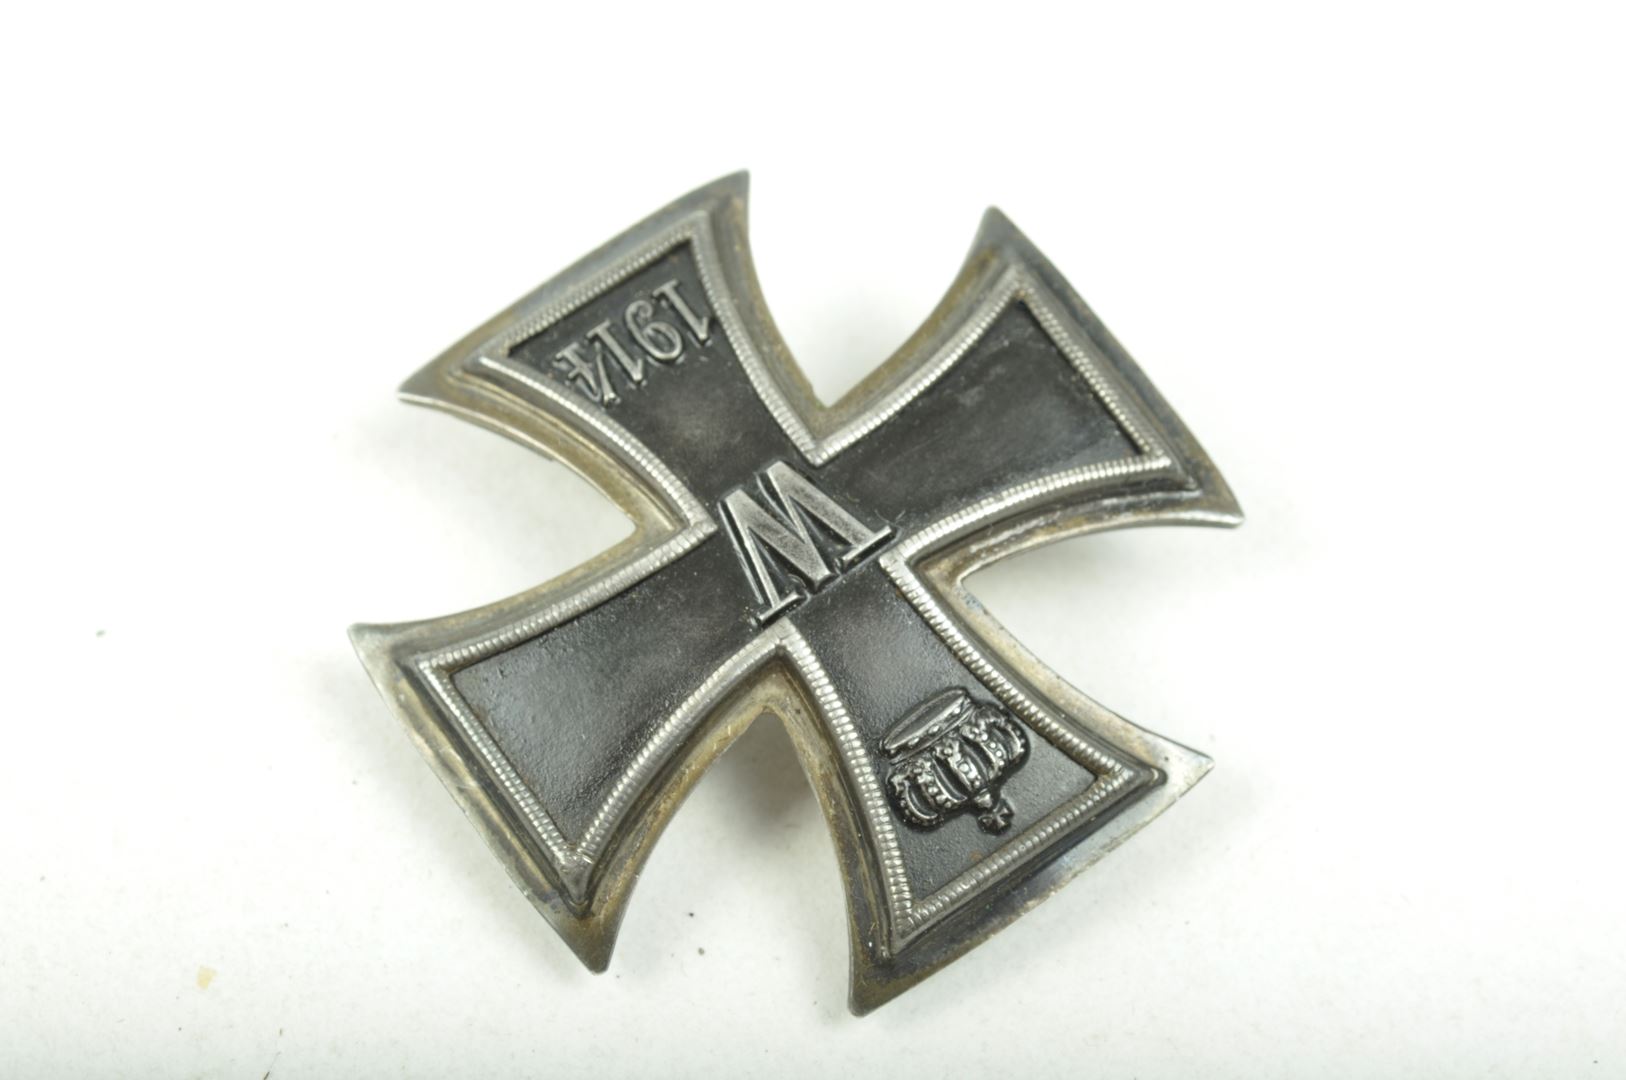 Croix de Fer de 1ière Classe dans son écrin – Major Military